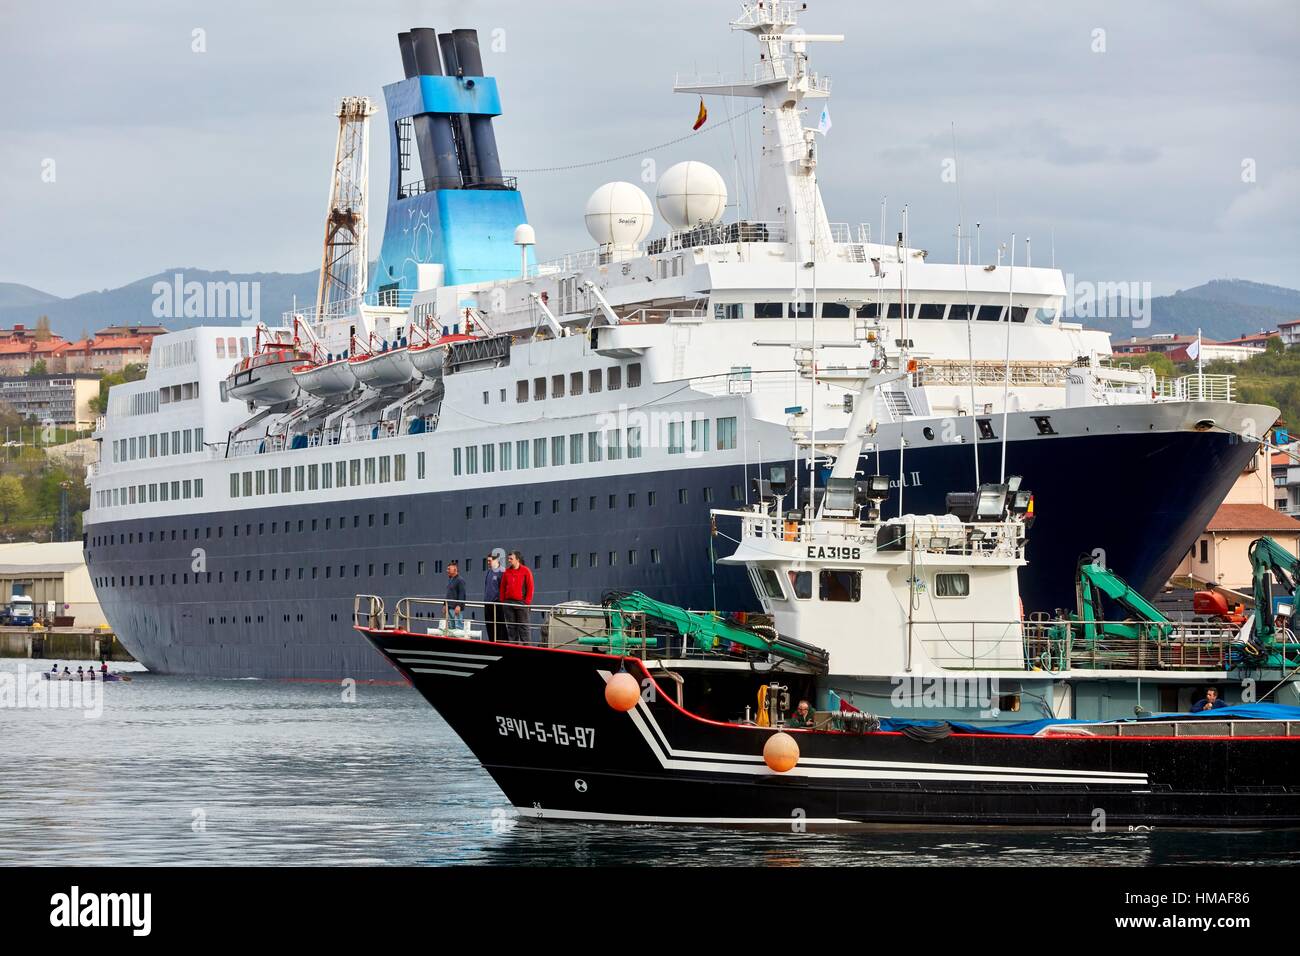 Cruise liner. Passenger ship. Pasaia Port. Gipuzkoa. Basque Country. Spain. Europe. Stock Photo